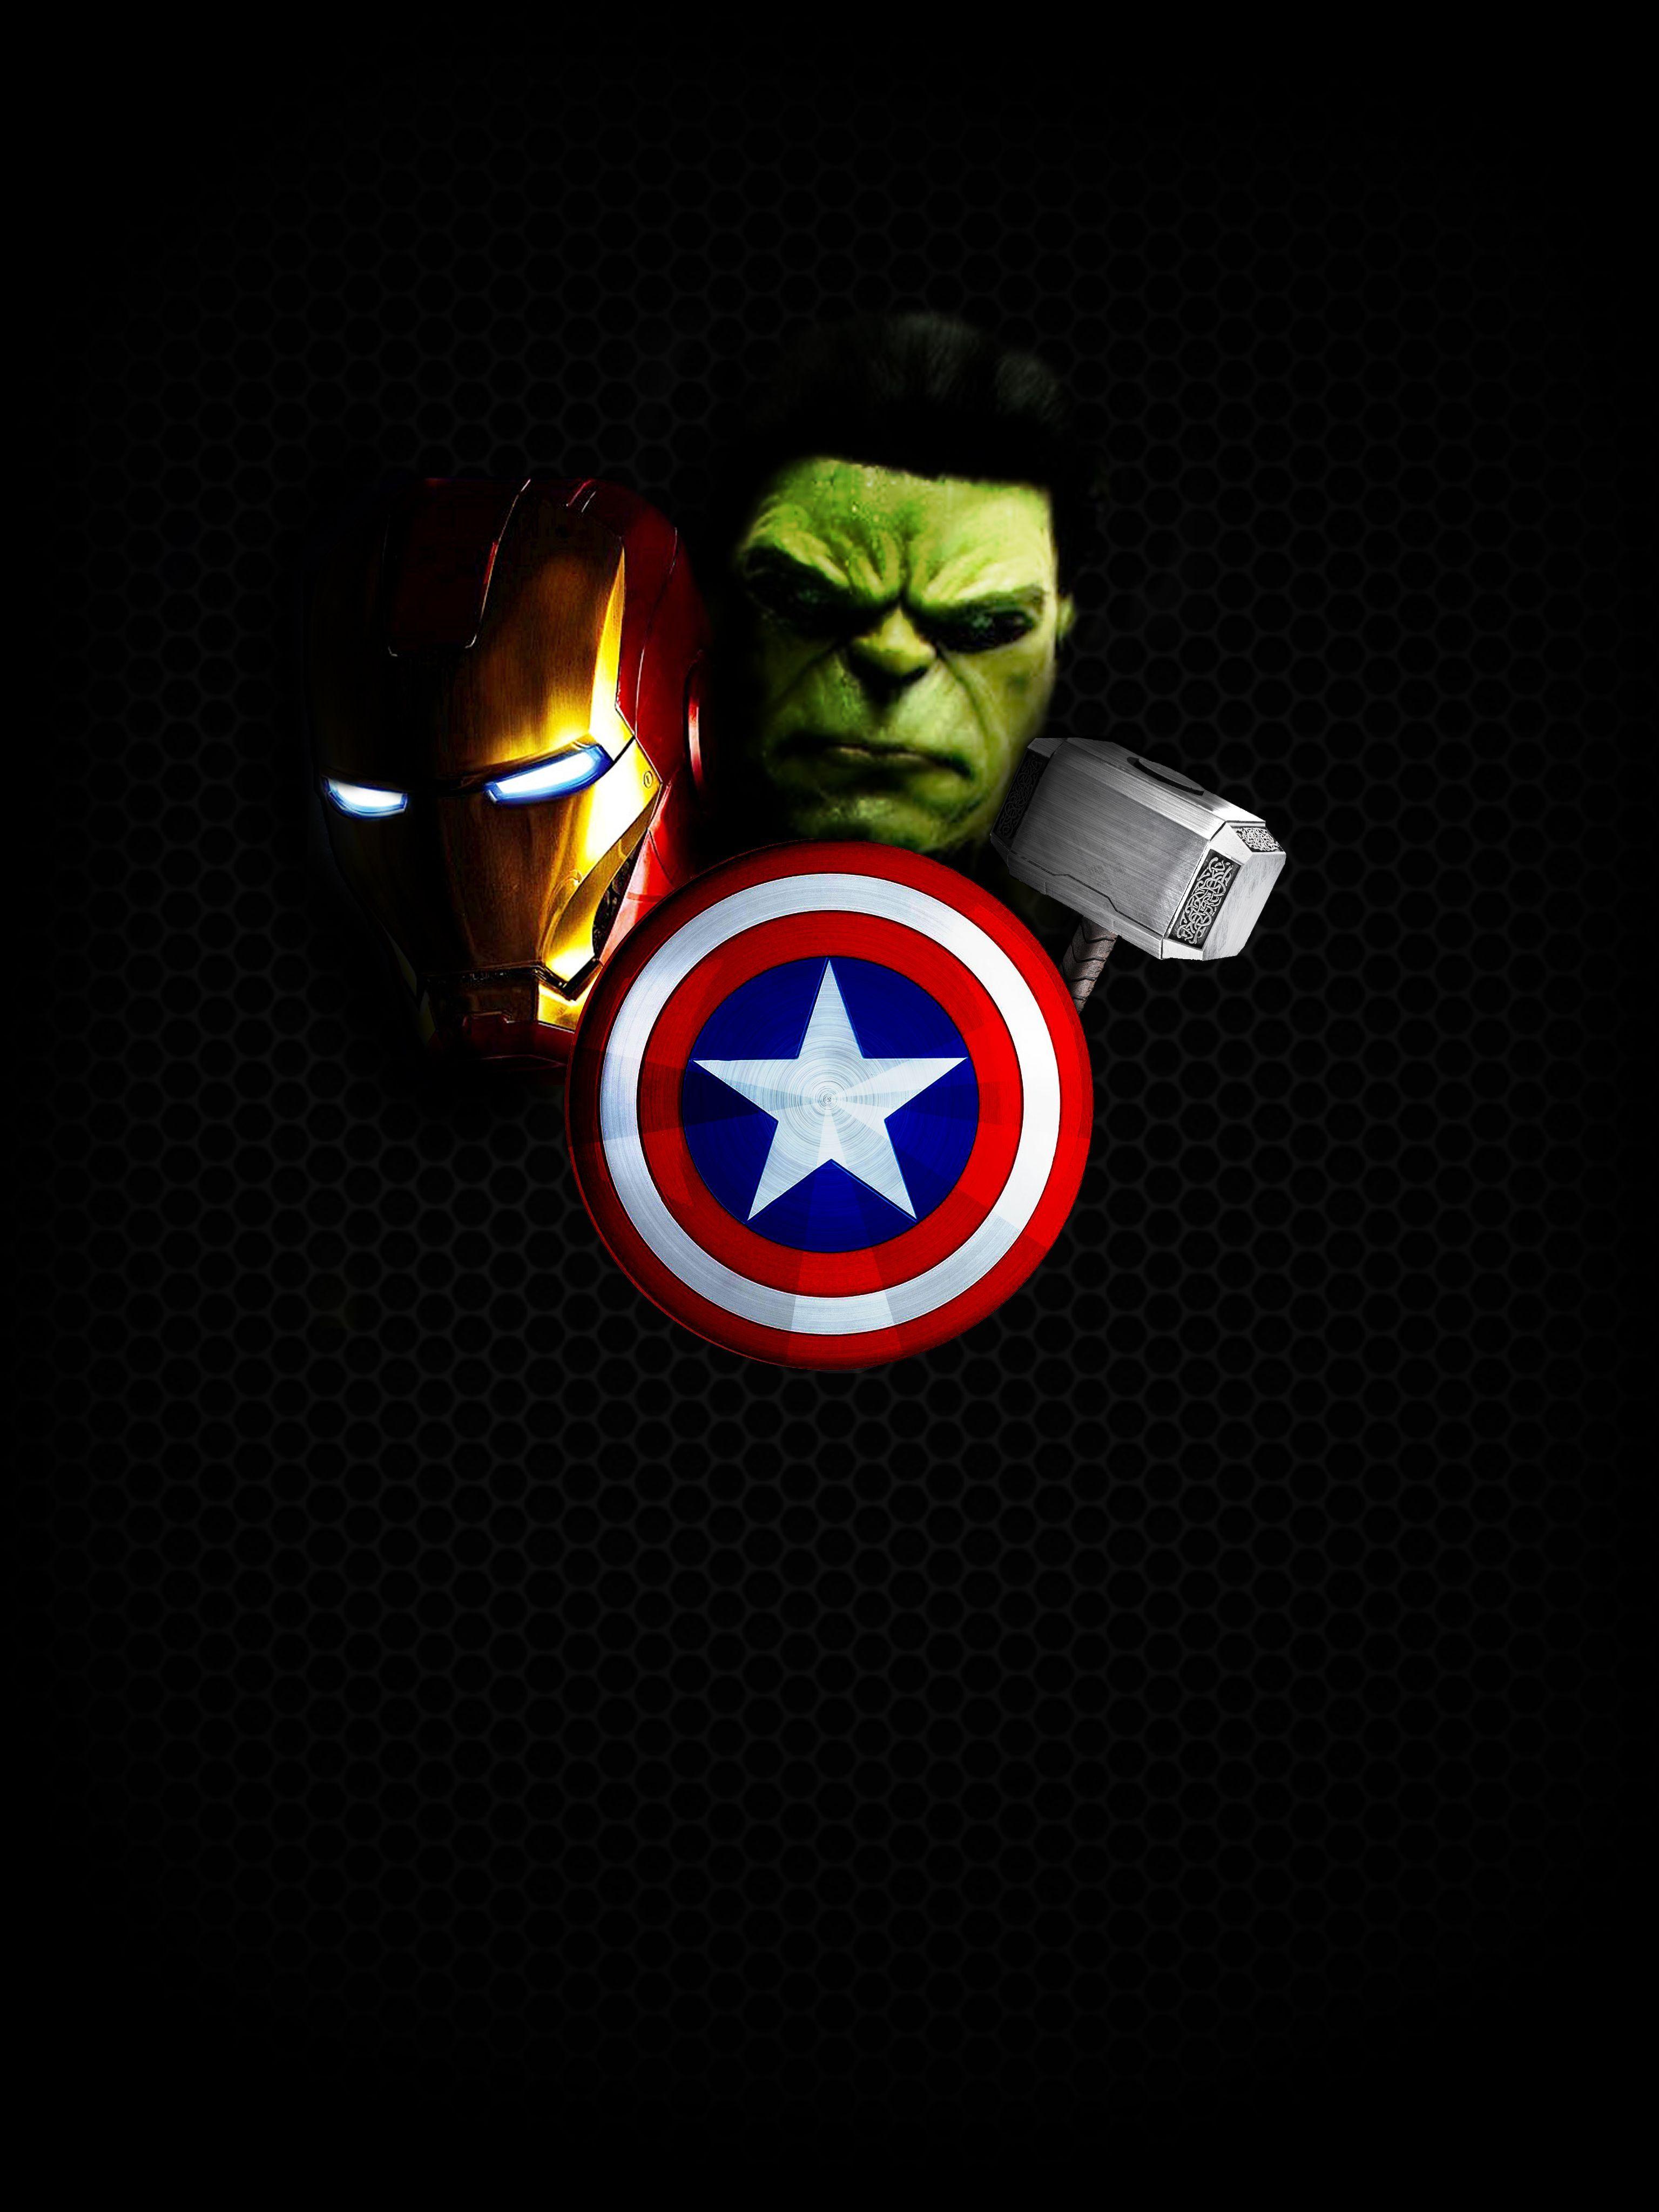 Marvel Avengers Mobile Wallpaper Free Marvel Avengers Mobile